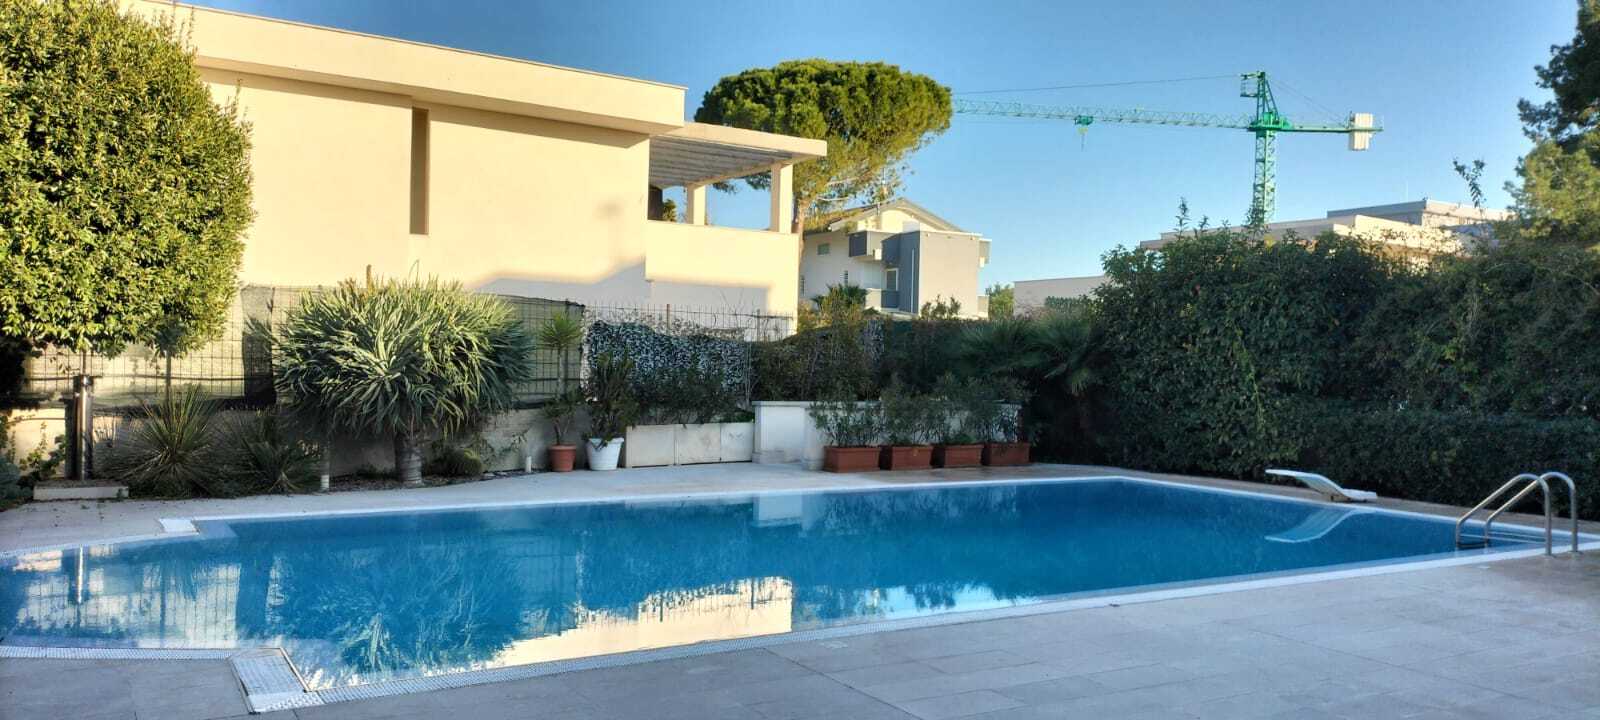 For sale villa in city Bari Puglia